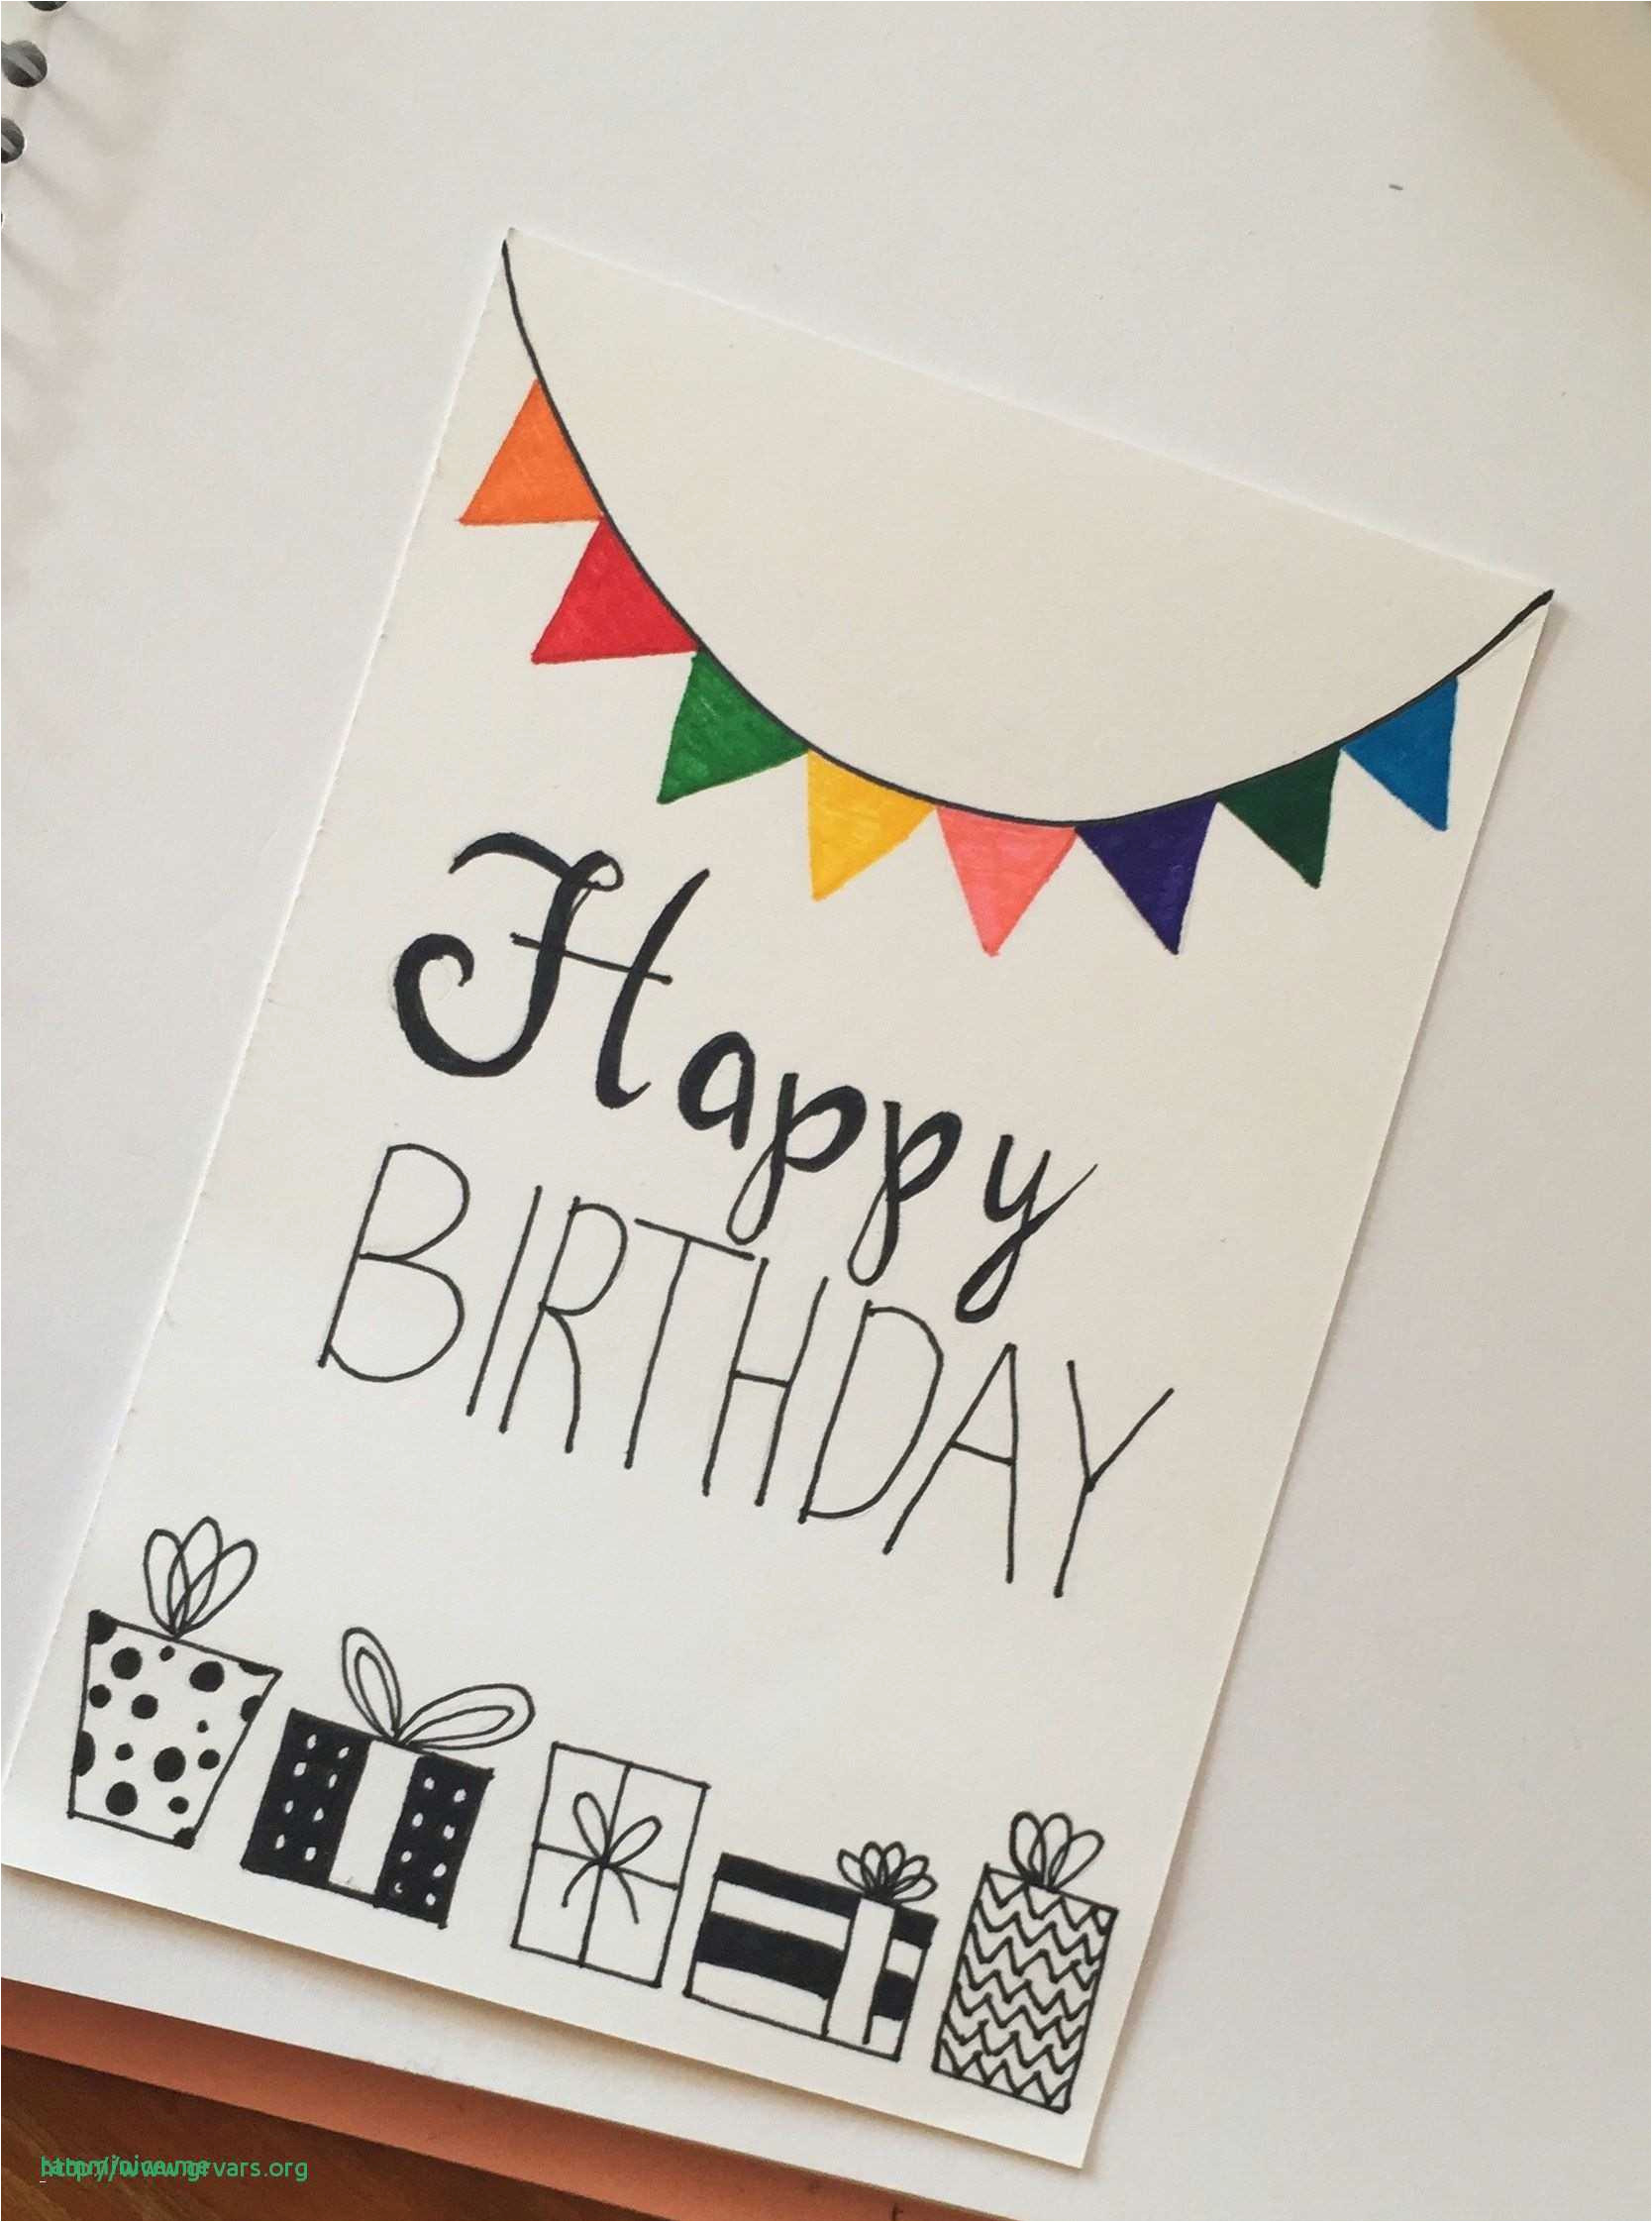 Birthday Cards Design Ideas Diy Birthday Card Design Ideas Simple Handmade Birthday Cards